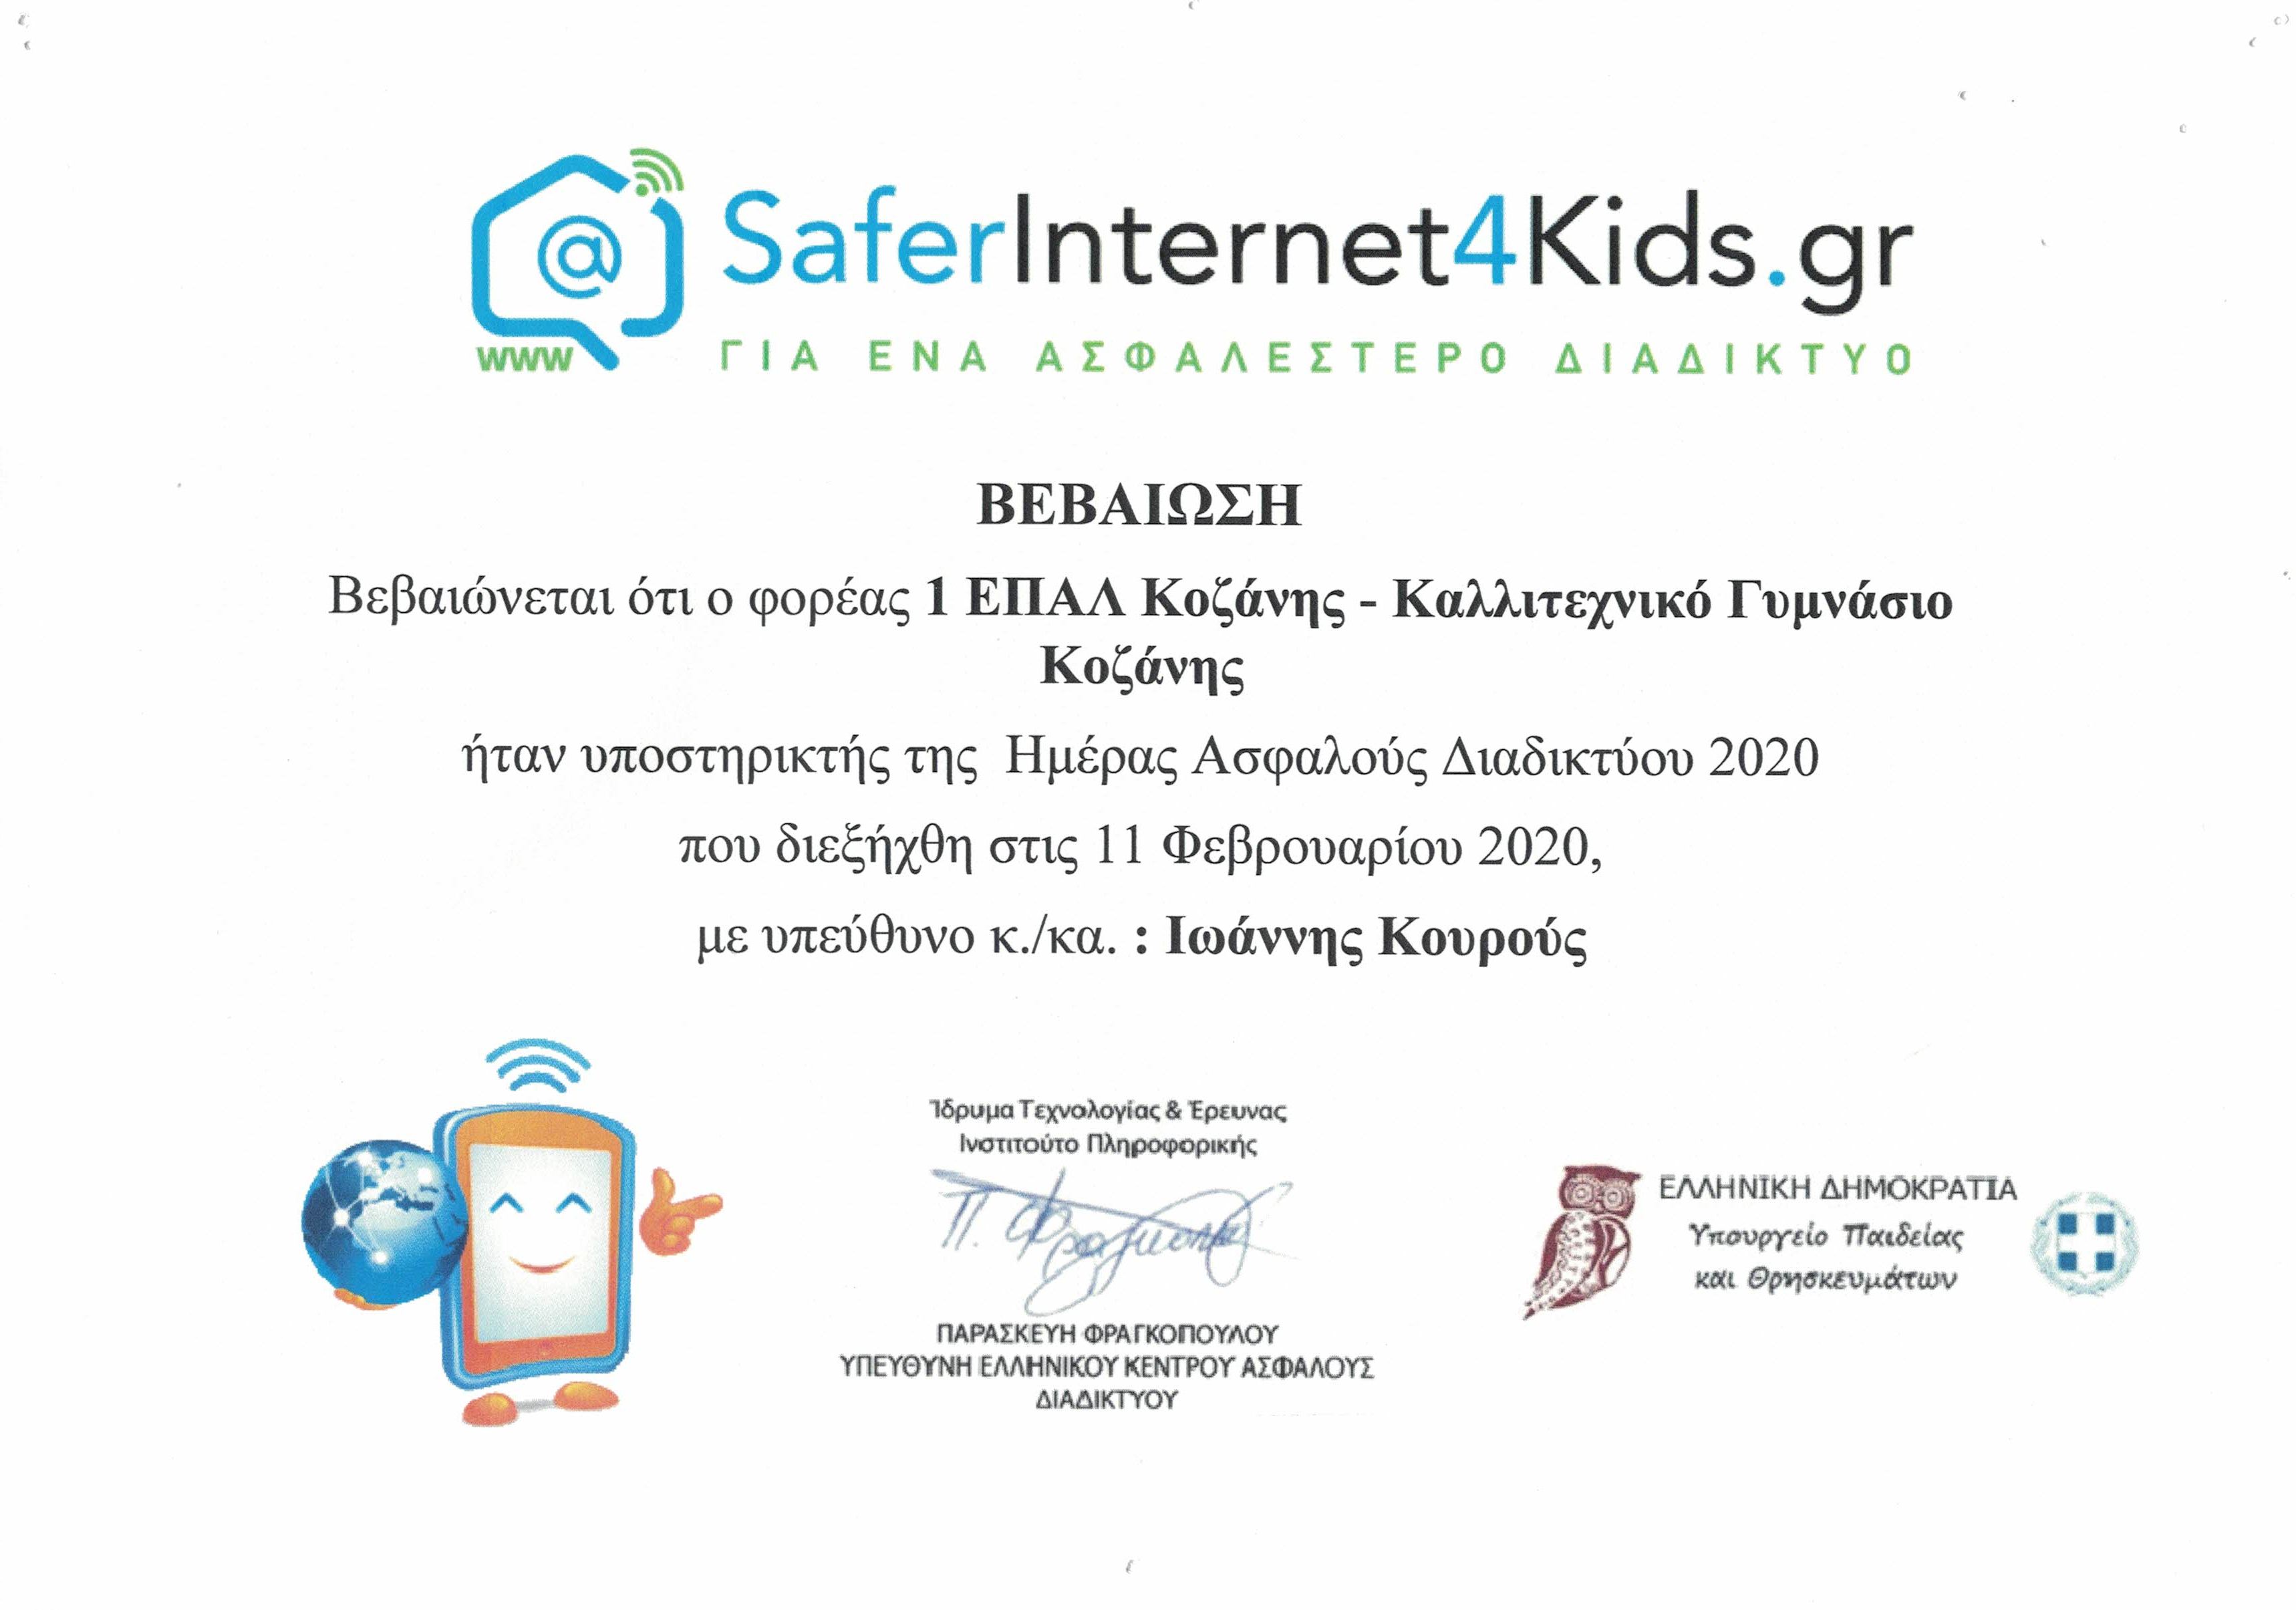 SaferInternet for kids